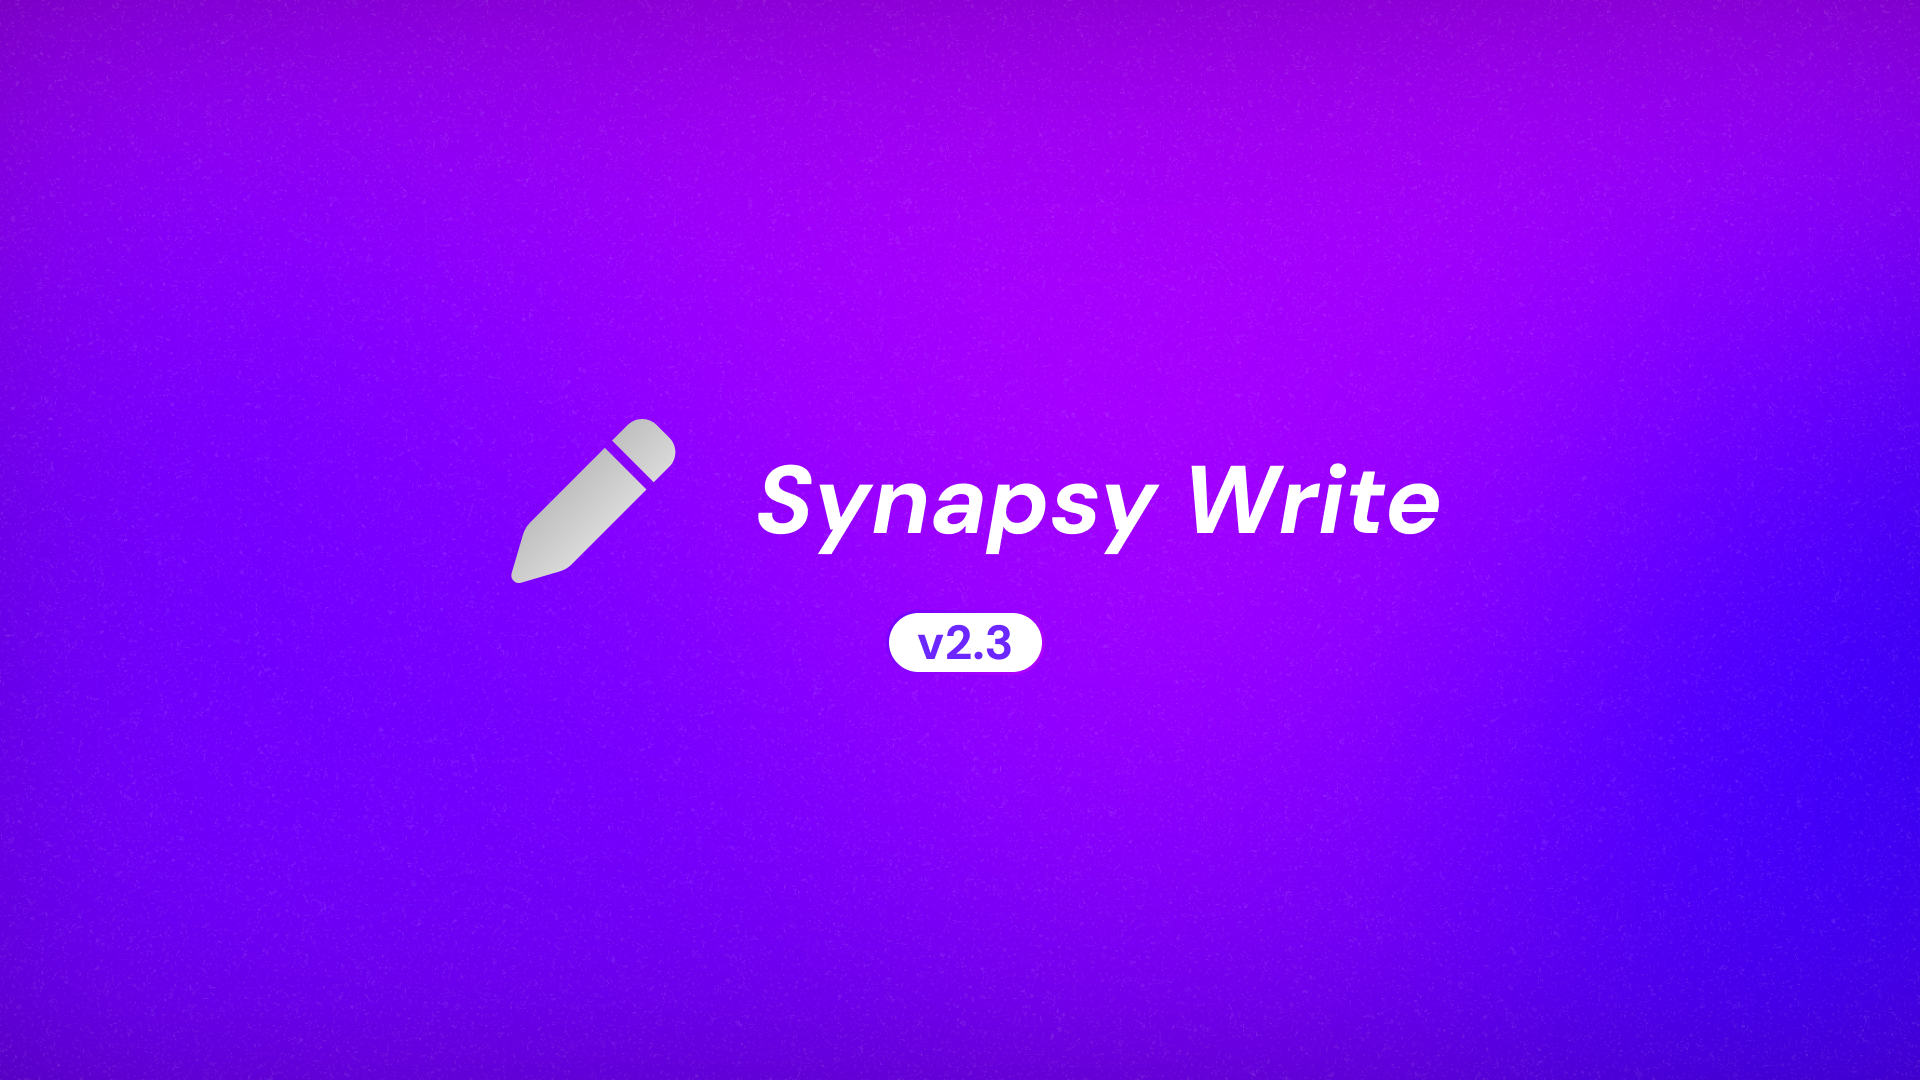 Synapsy Write v2.3.0 Changelog